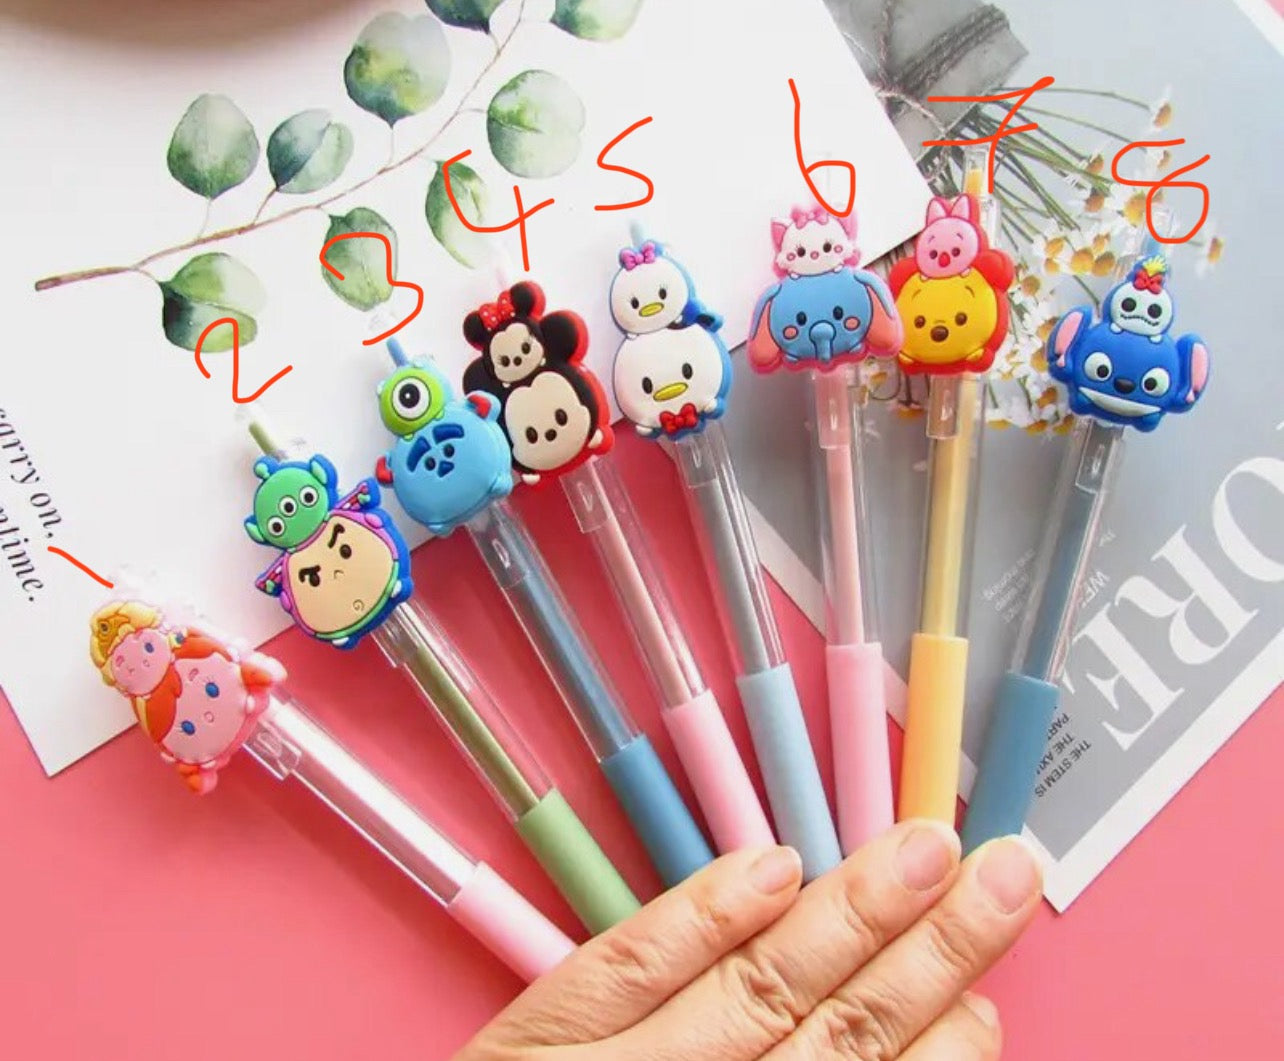 Mickey sully buzz Pooh emoji hunny cute pens ballpoint